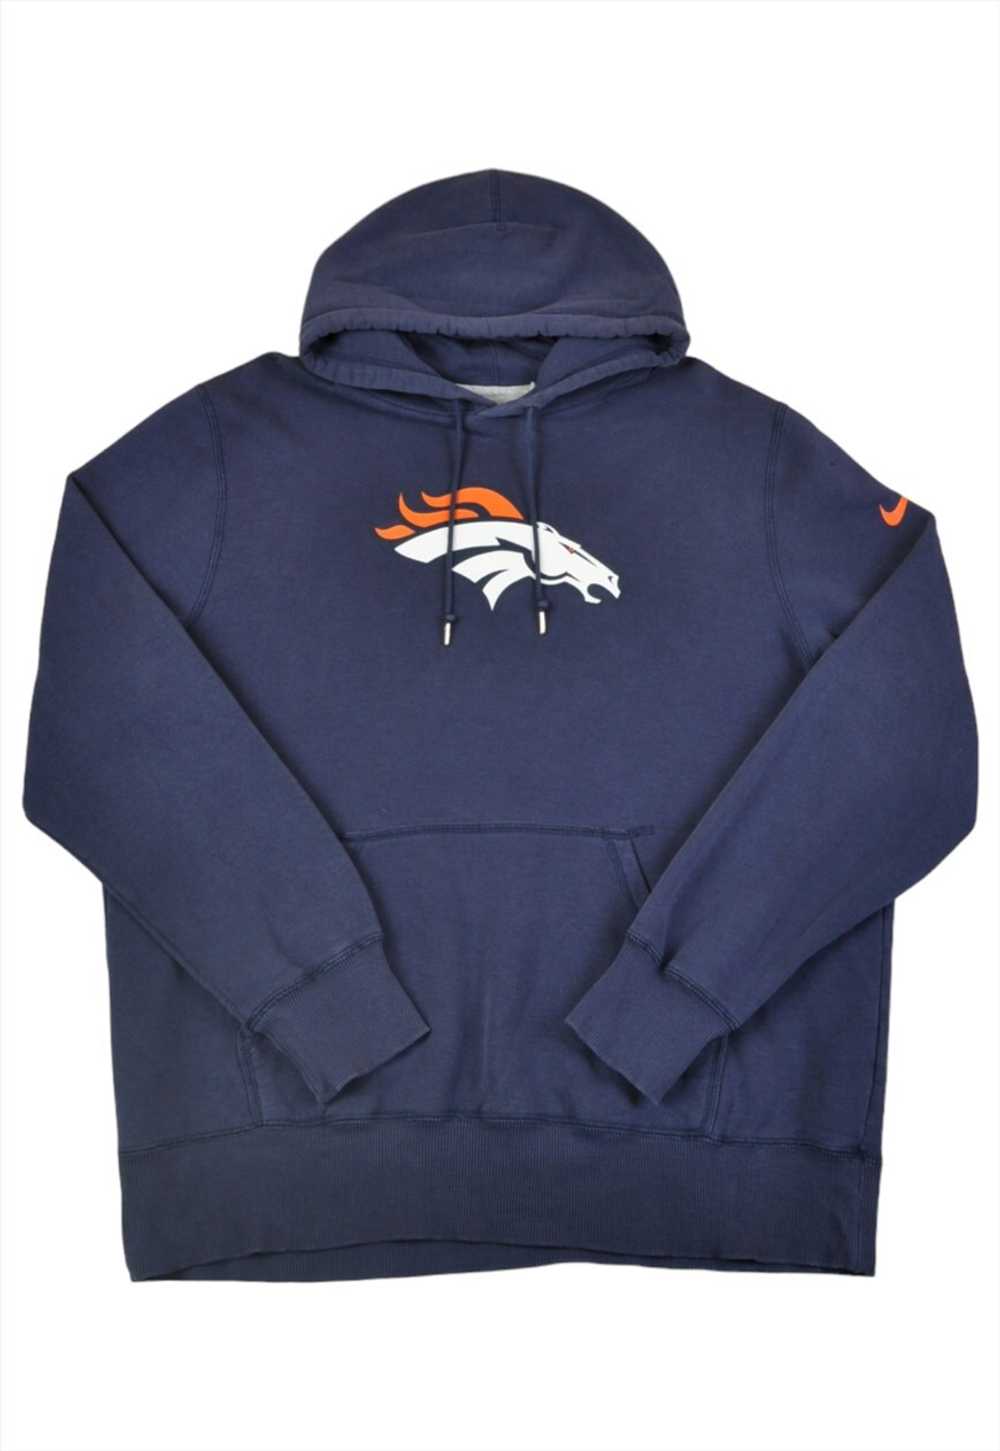 Vintage Nike NFL Denver Broncos Hoodie Sweatshirt… - image 1